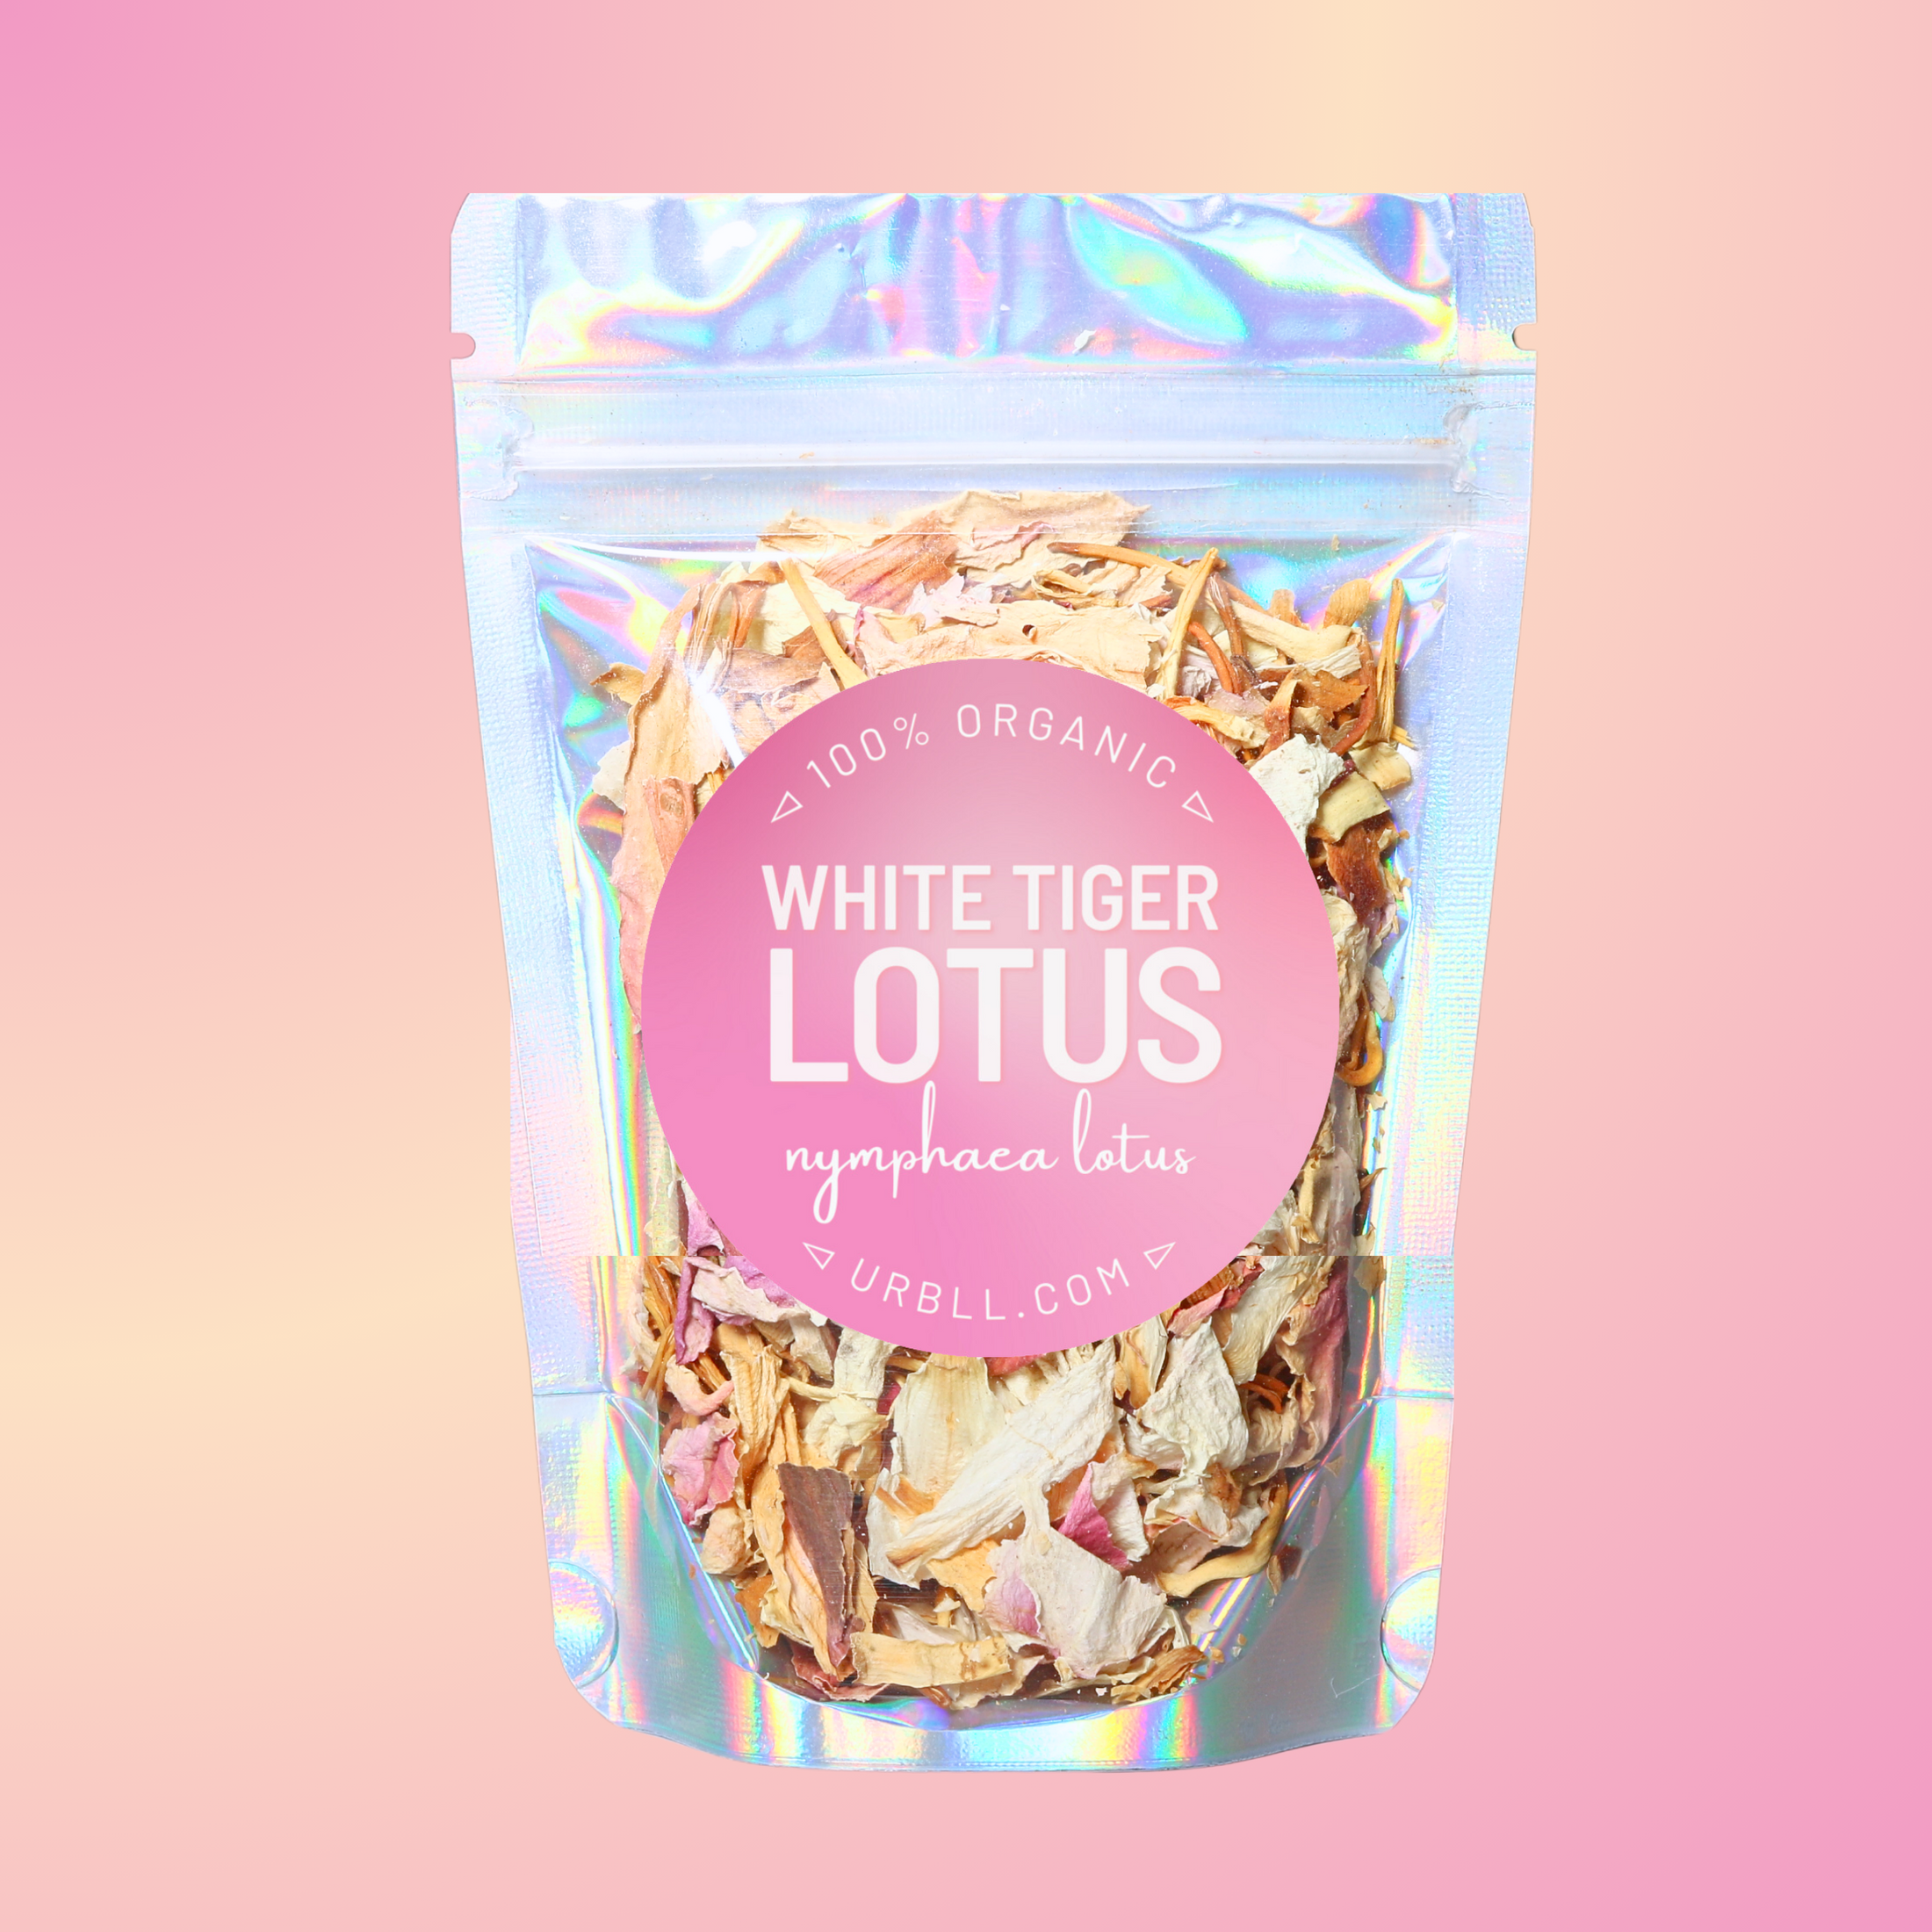 5 Lotus Variety Bundle